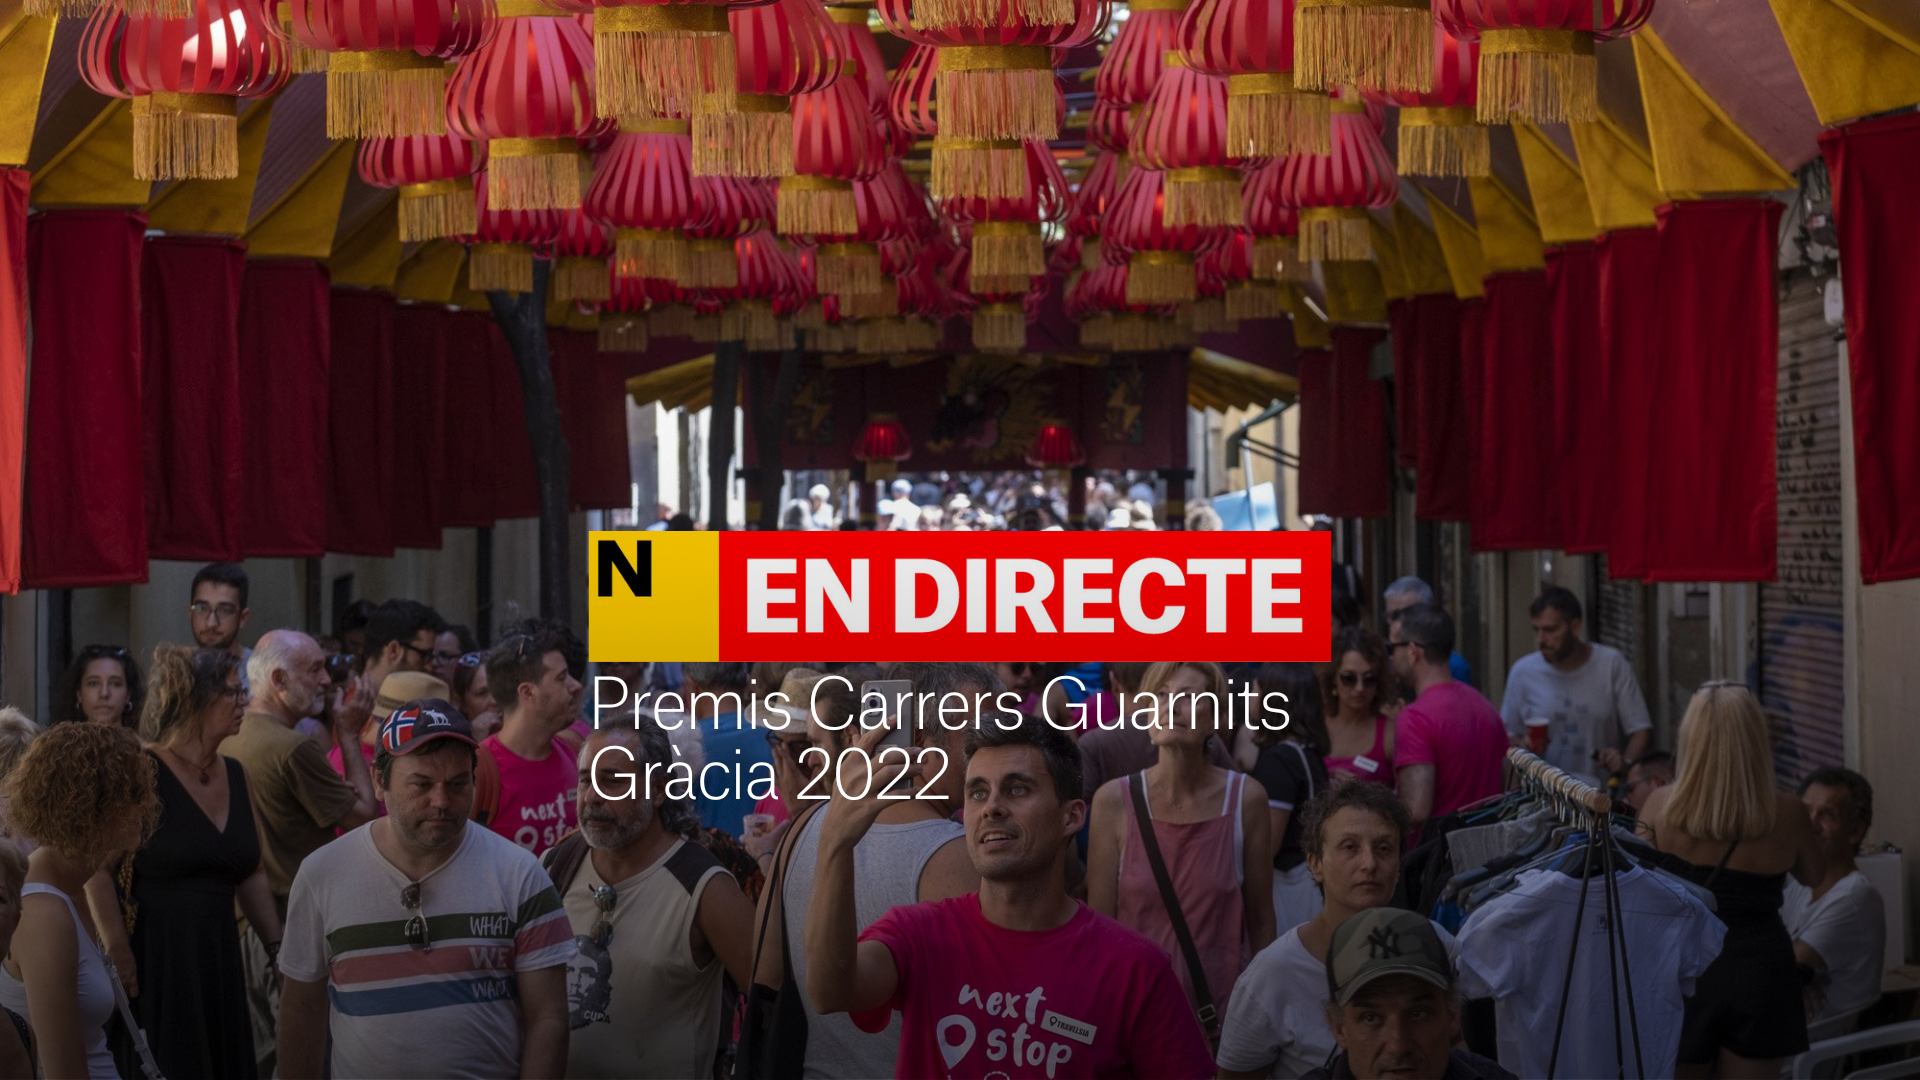 Premis de carrers guarnits de les Festes de Gràcia 2022 | DIRECTE